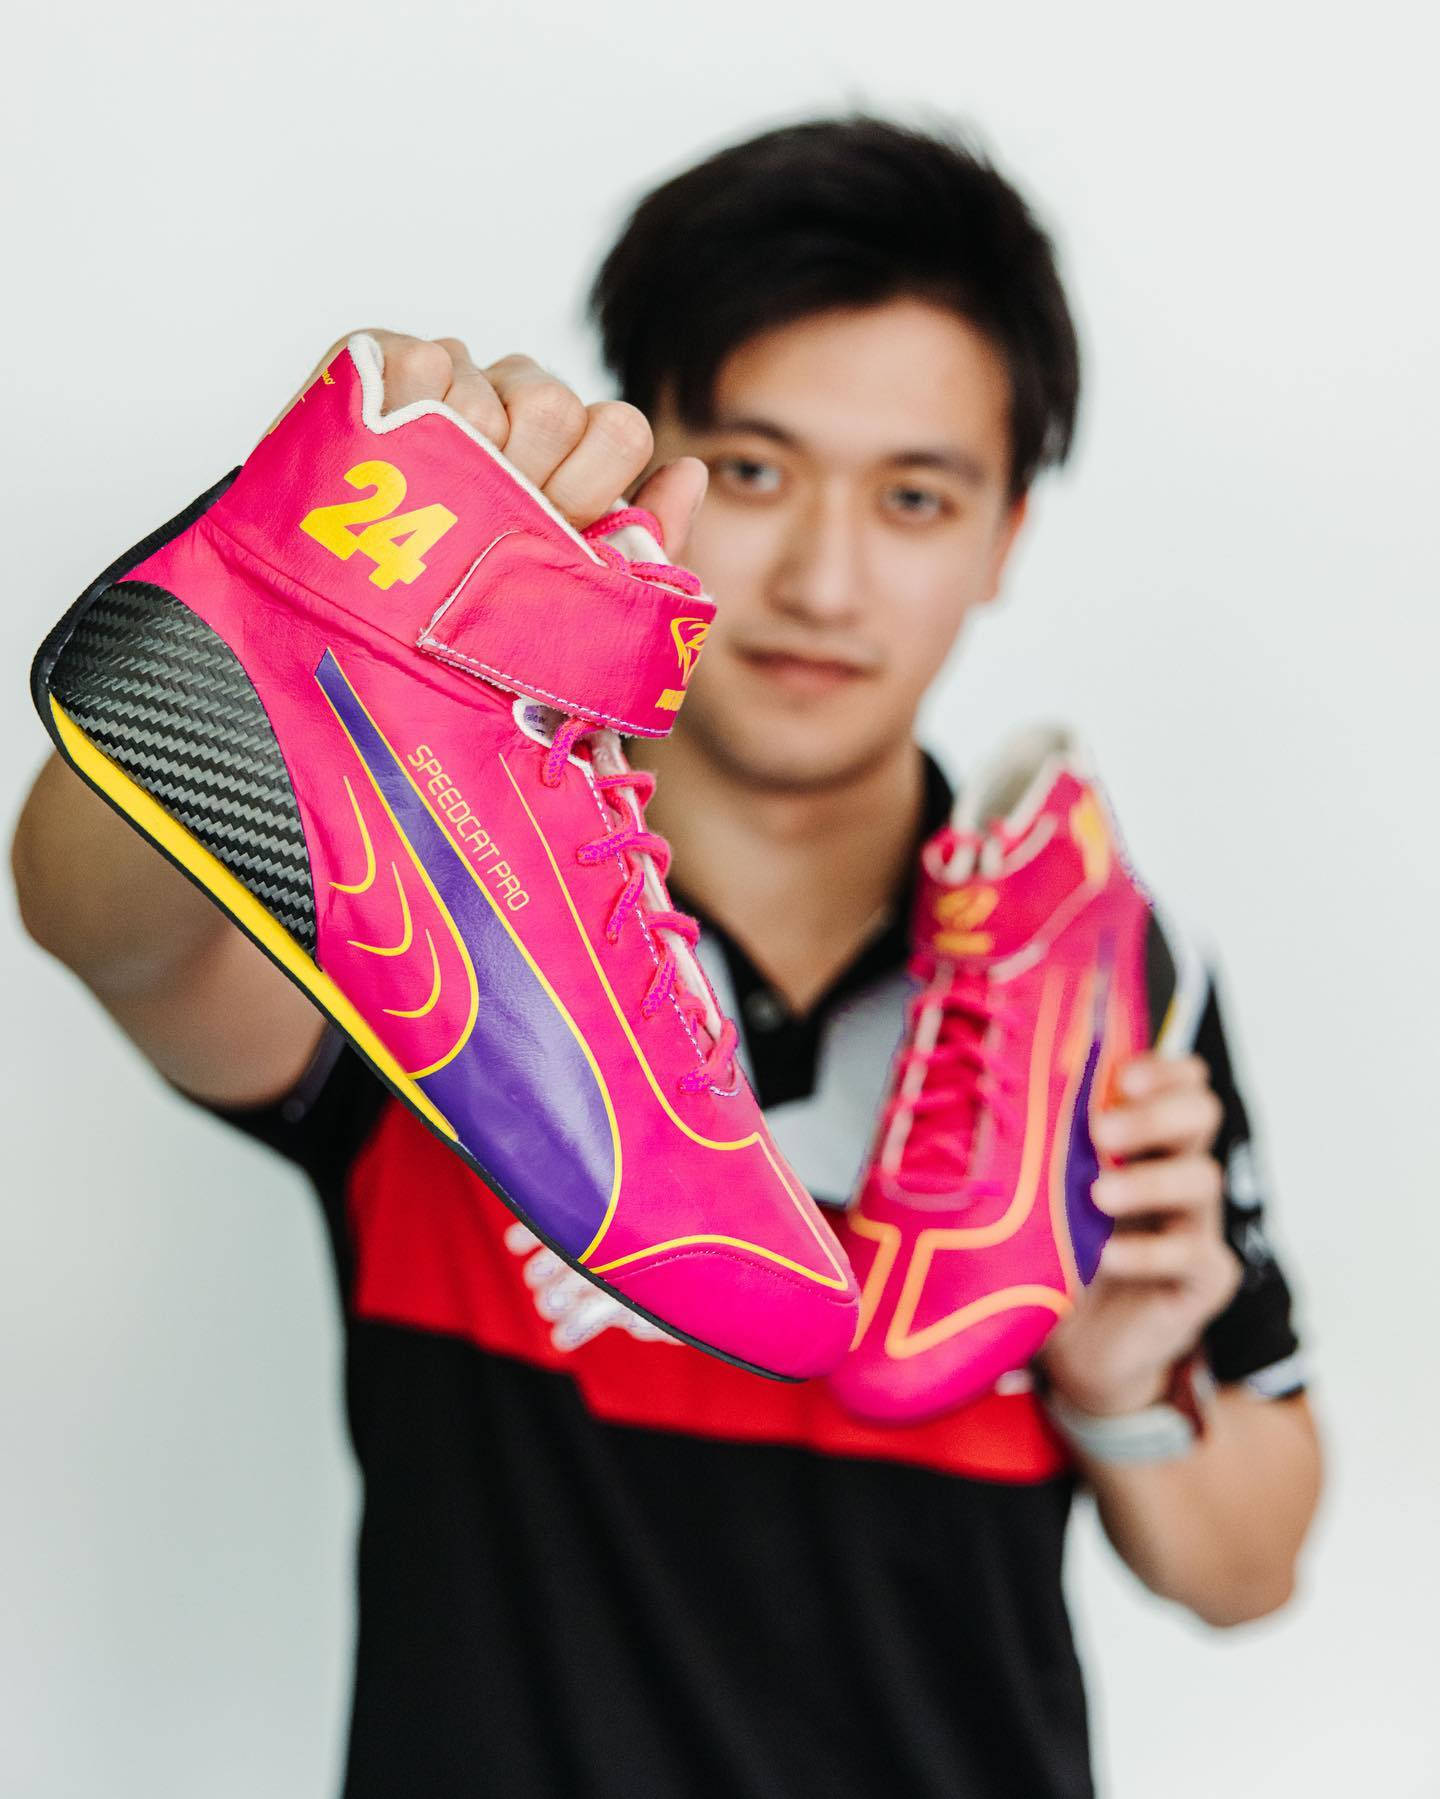 Guanyu Zhou Pink Sneakers